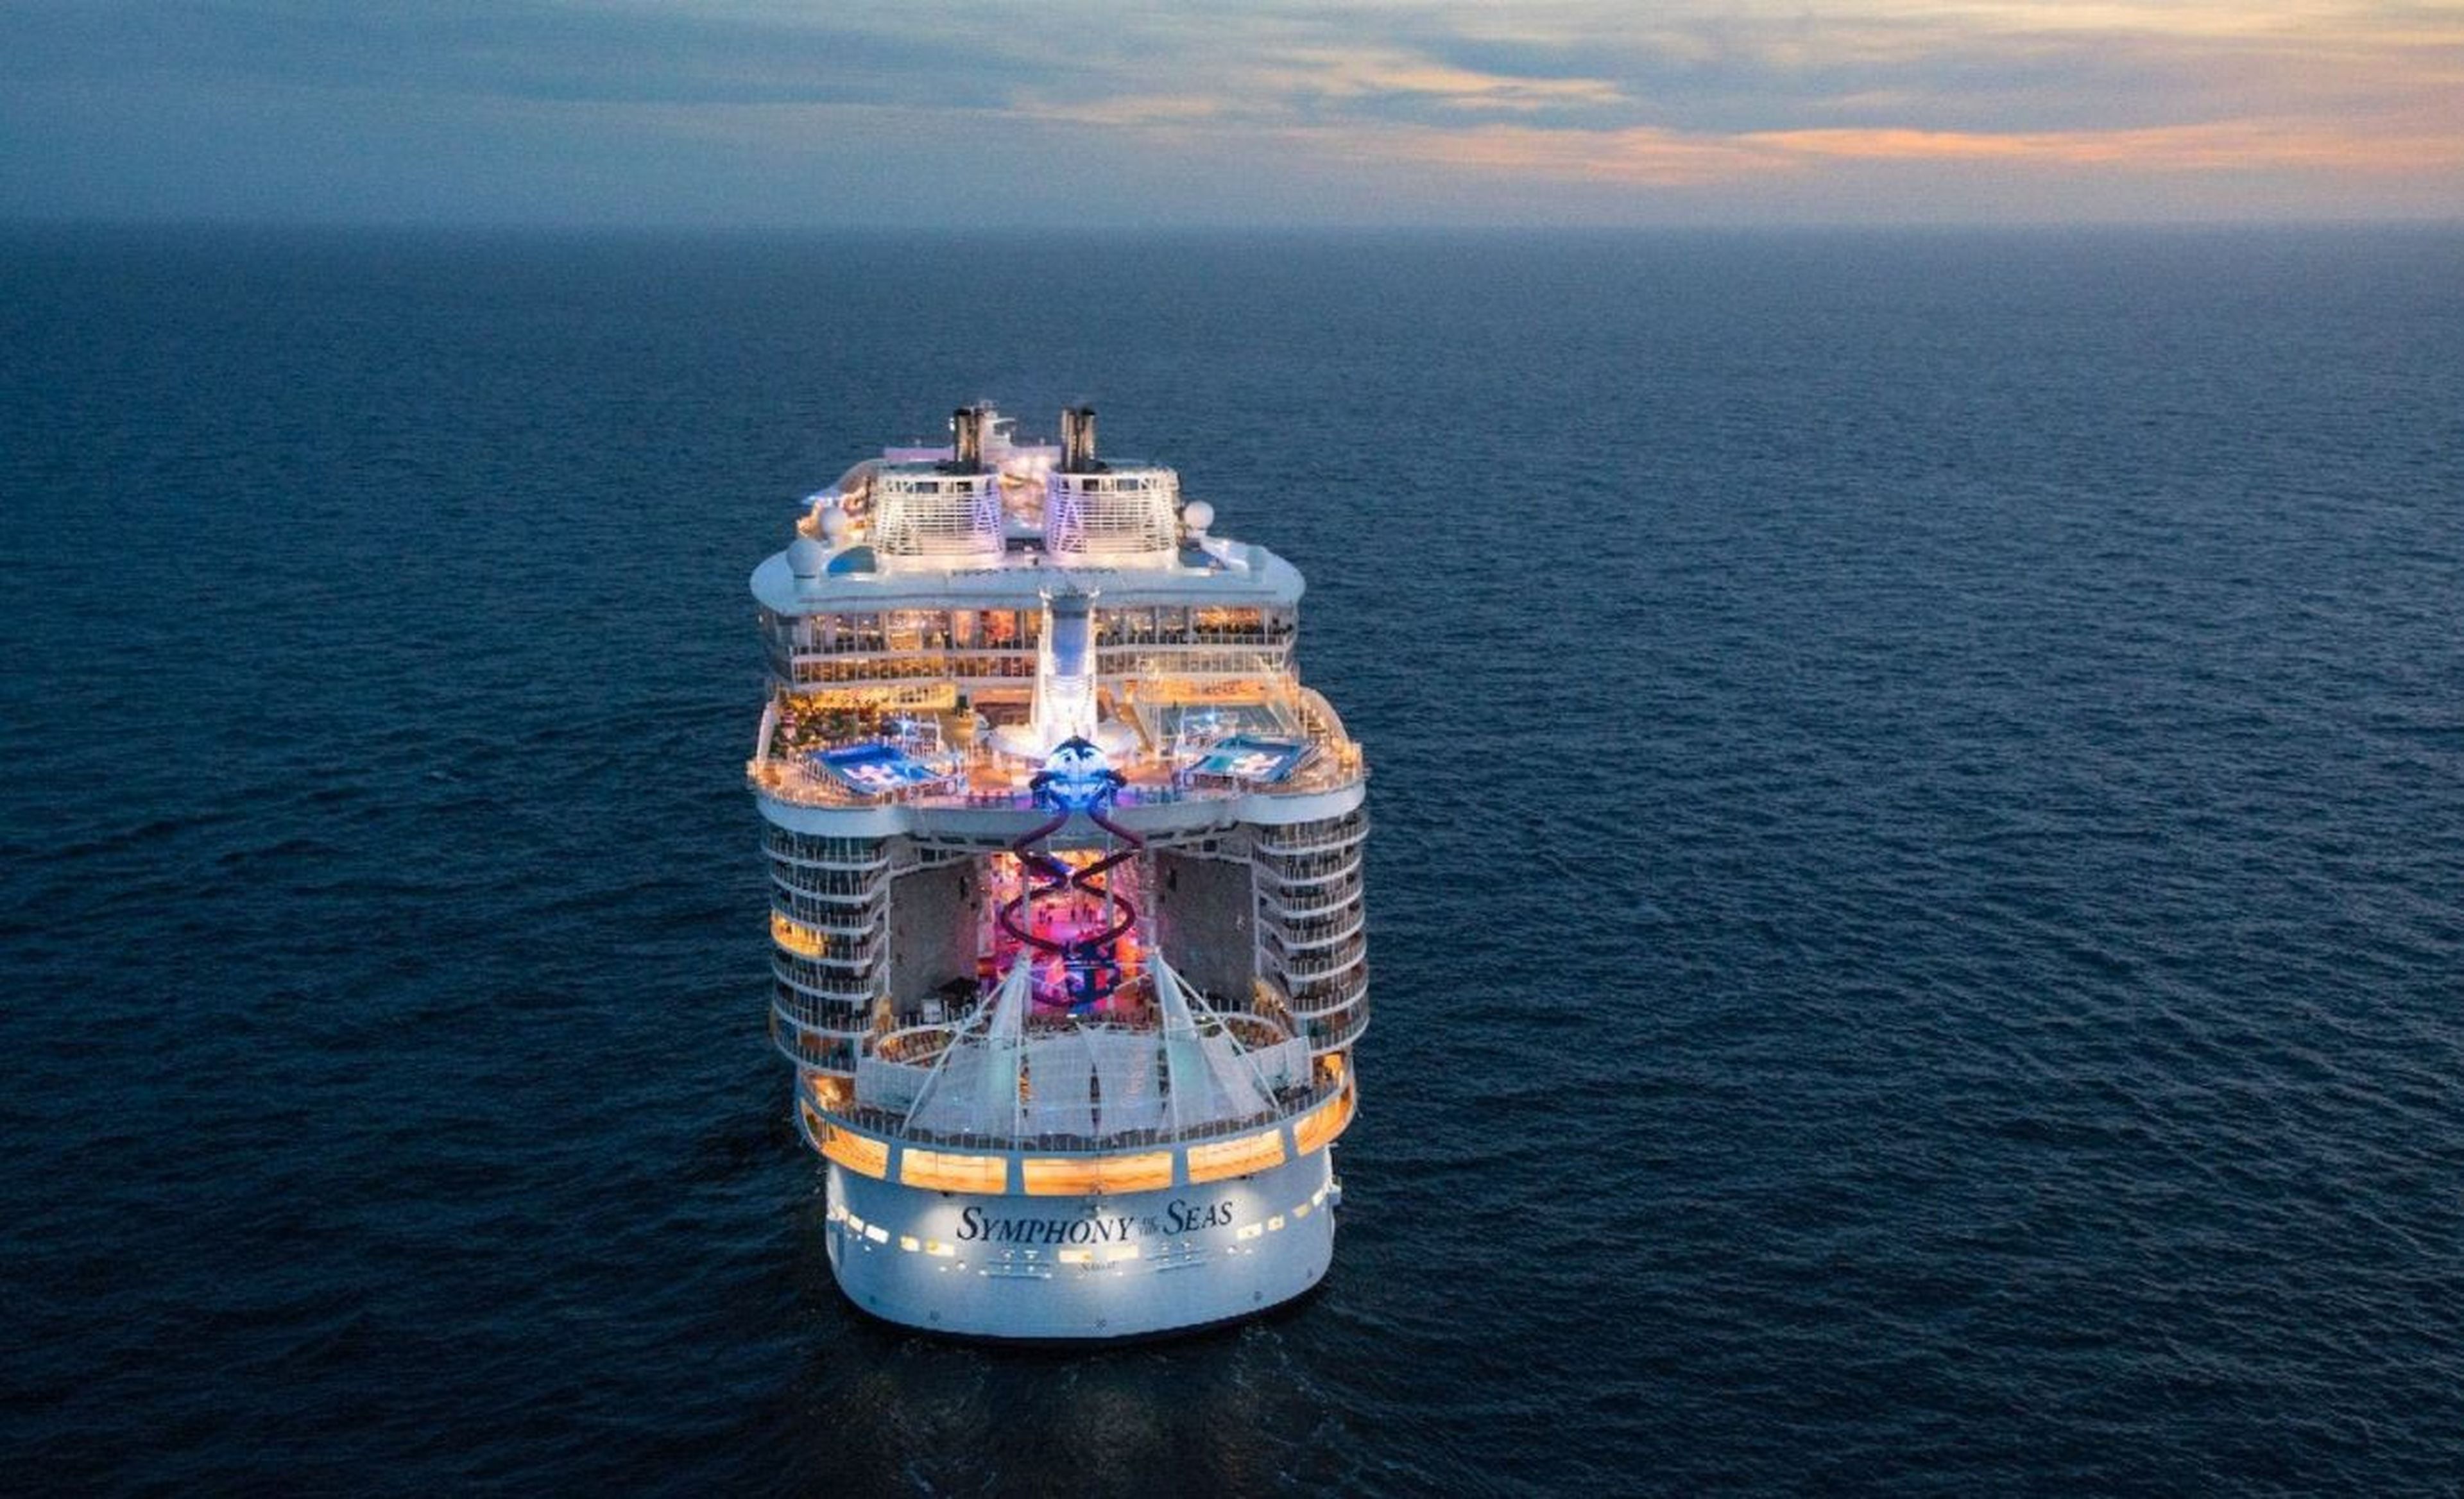 El Symphony of the Seas es el crucero más grande del mundo. Pero su reinado tiene los días contados